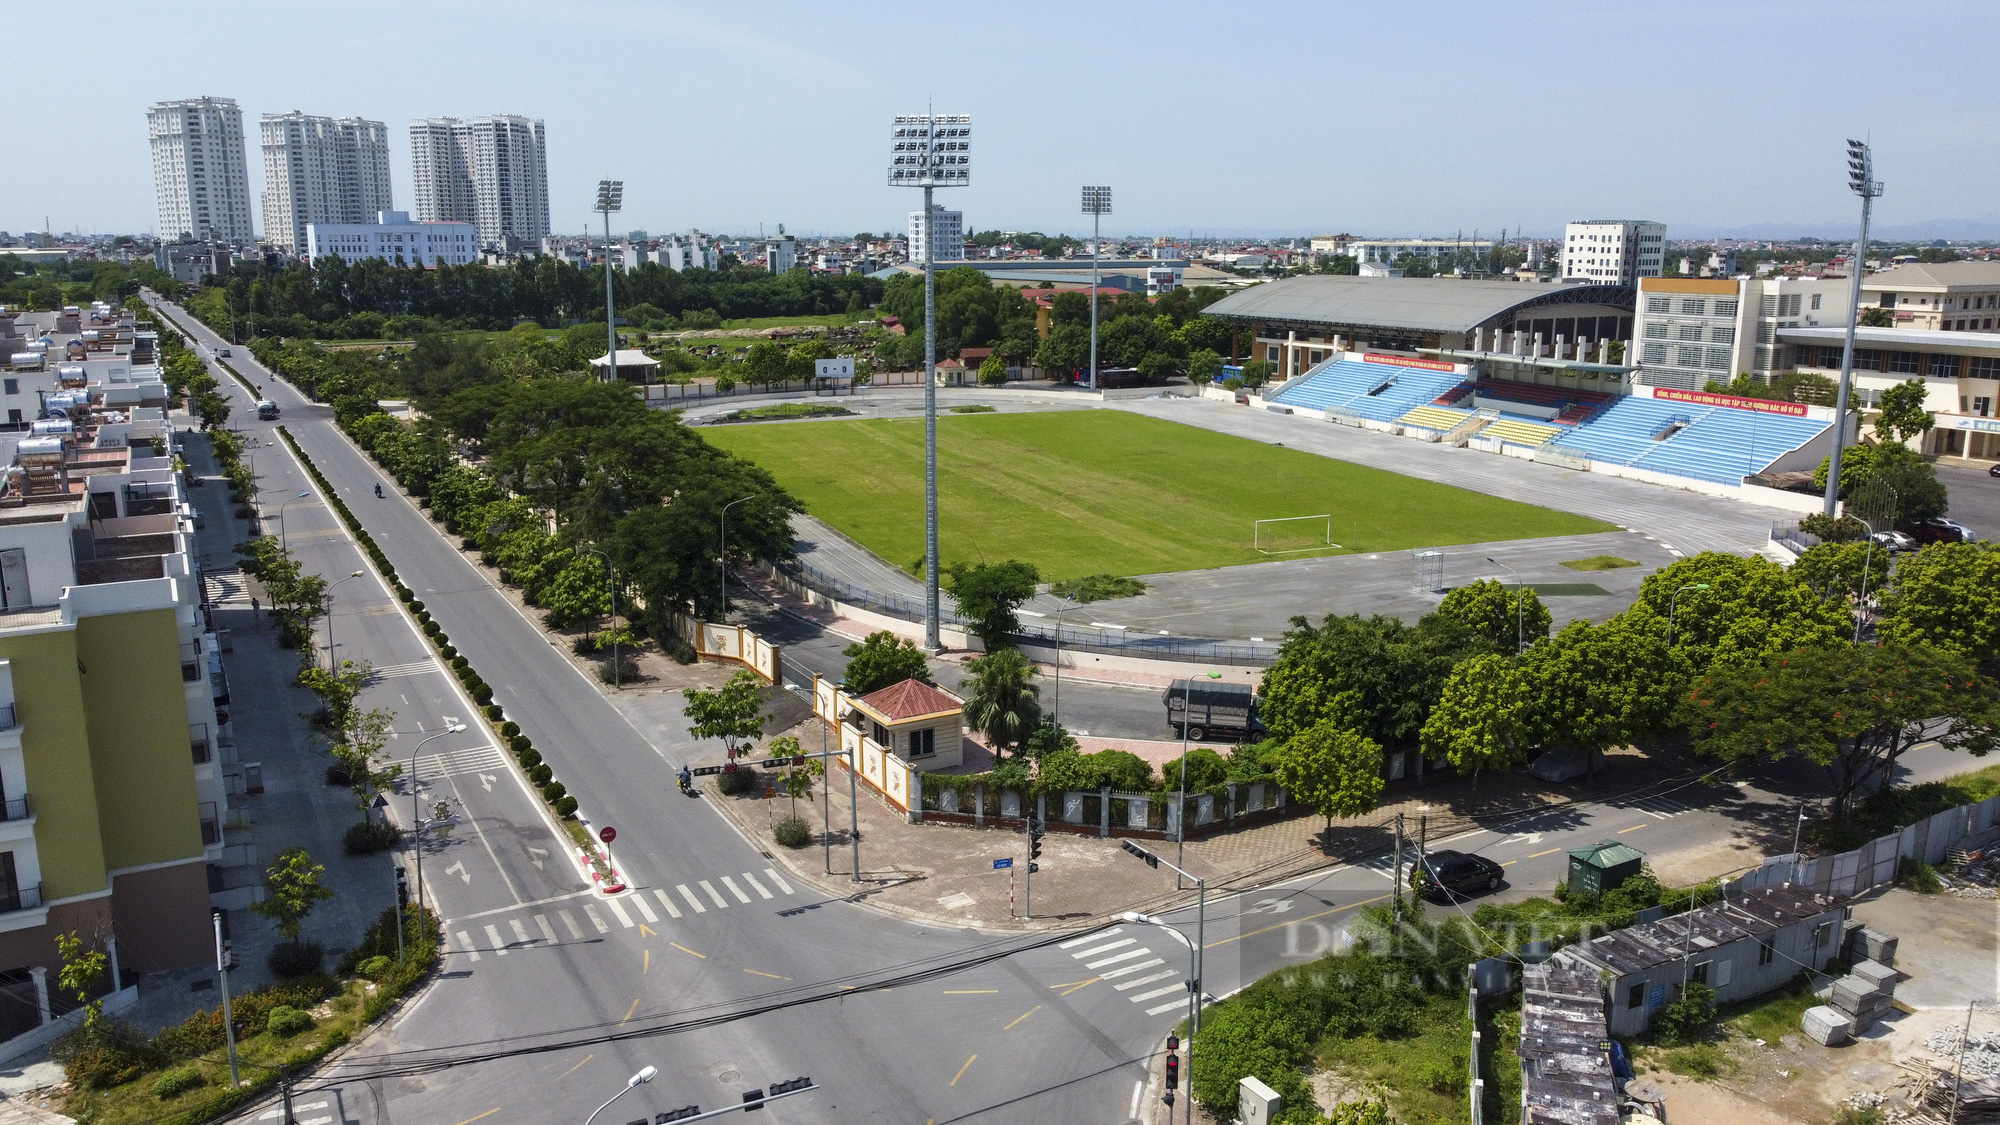 Hà Nội: Cận cảnh bến xe, sân vận động được đề xuất để tập kết hàng hoá - Ảnh 8.